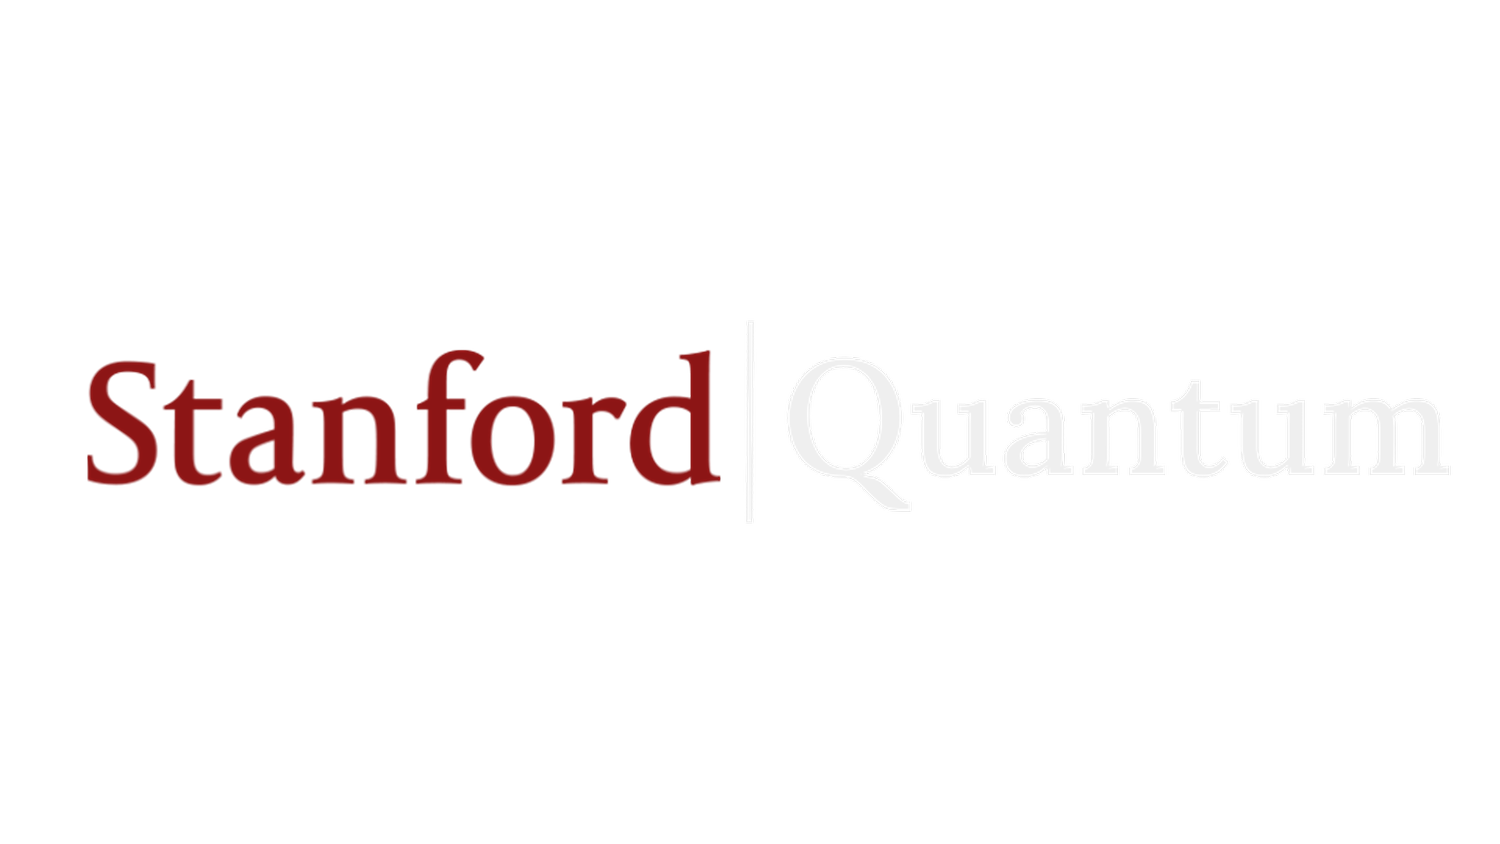 Stanford Quantum